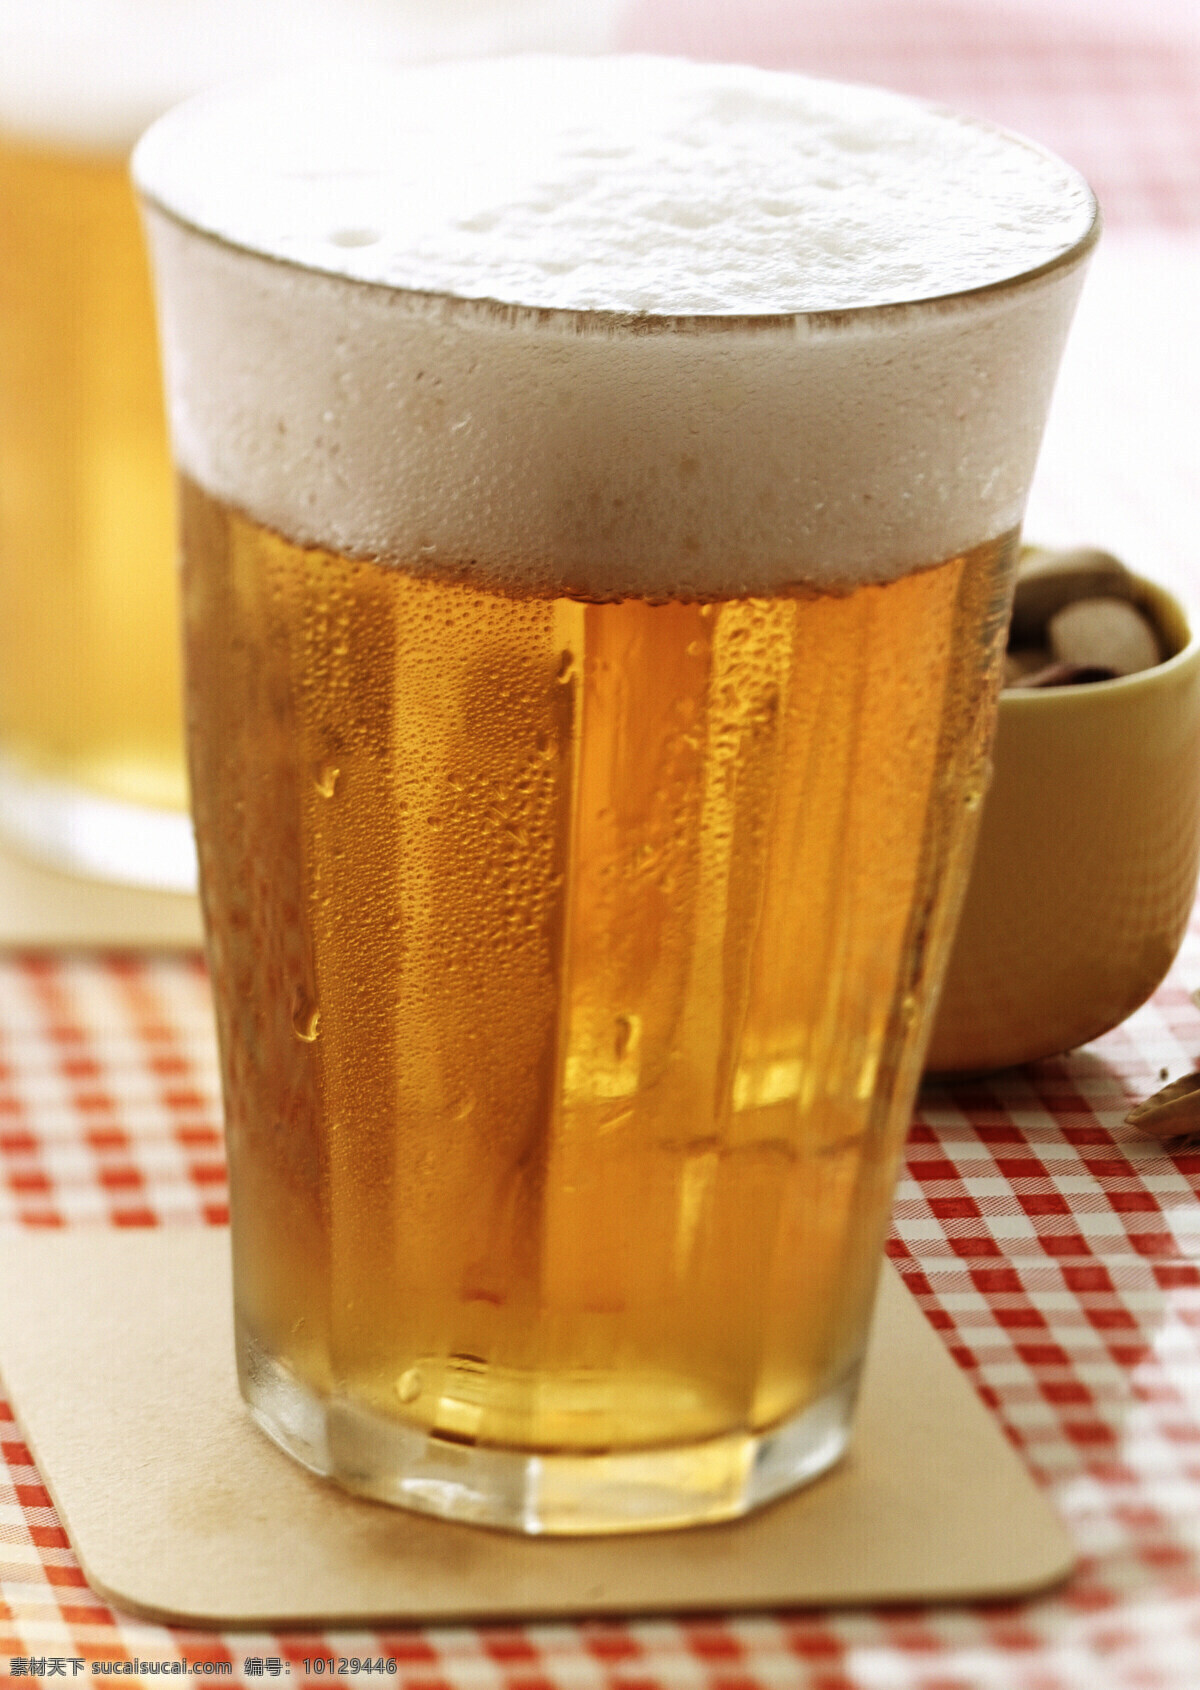 啤酒图片素材 酒水饮料 美酒 酒杯 玻璃杯 啤酒 酒类图片 餐饮美食